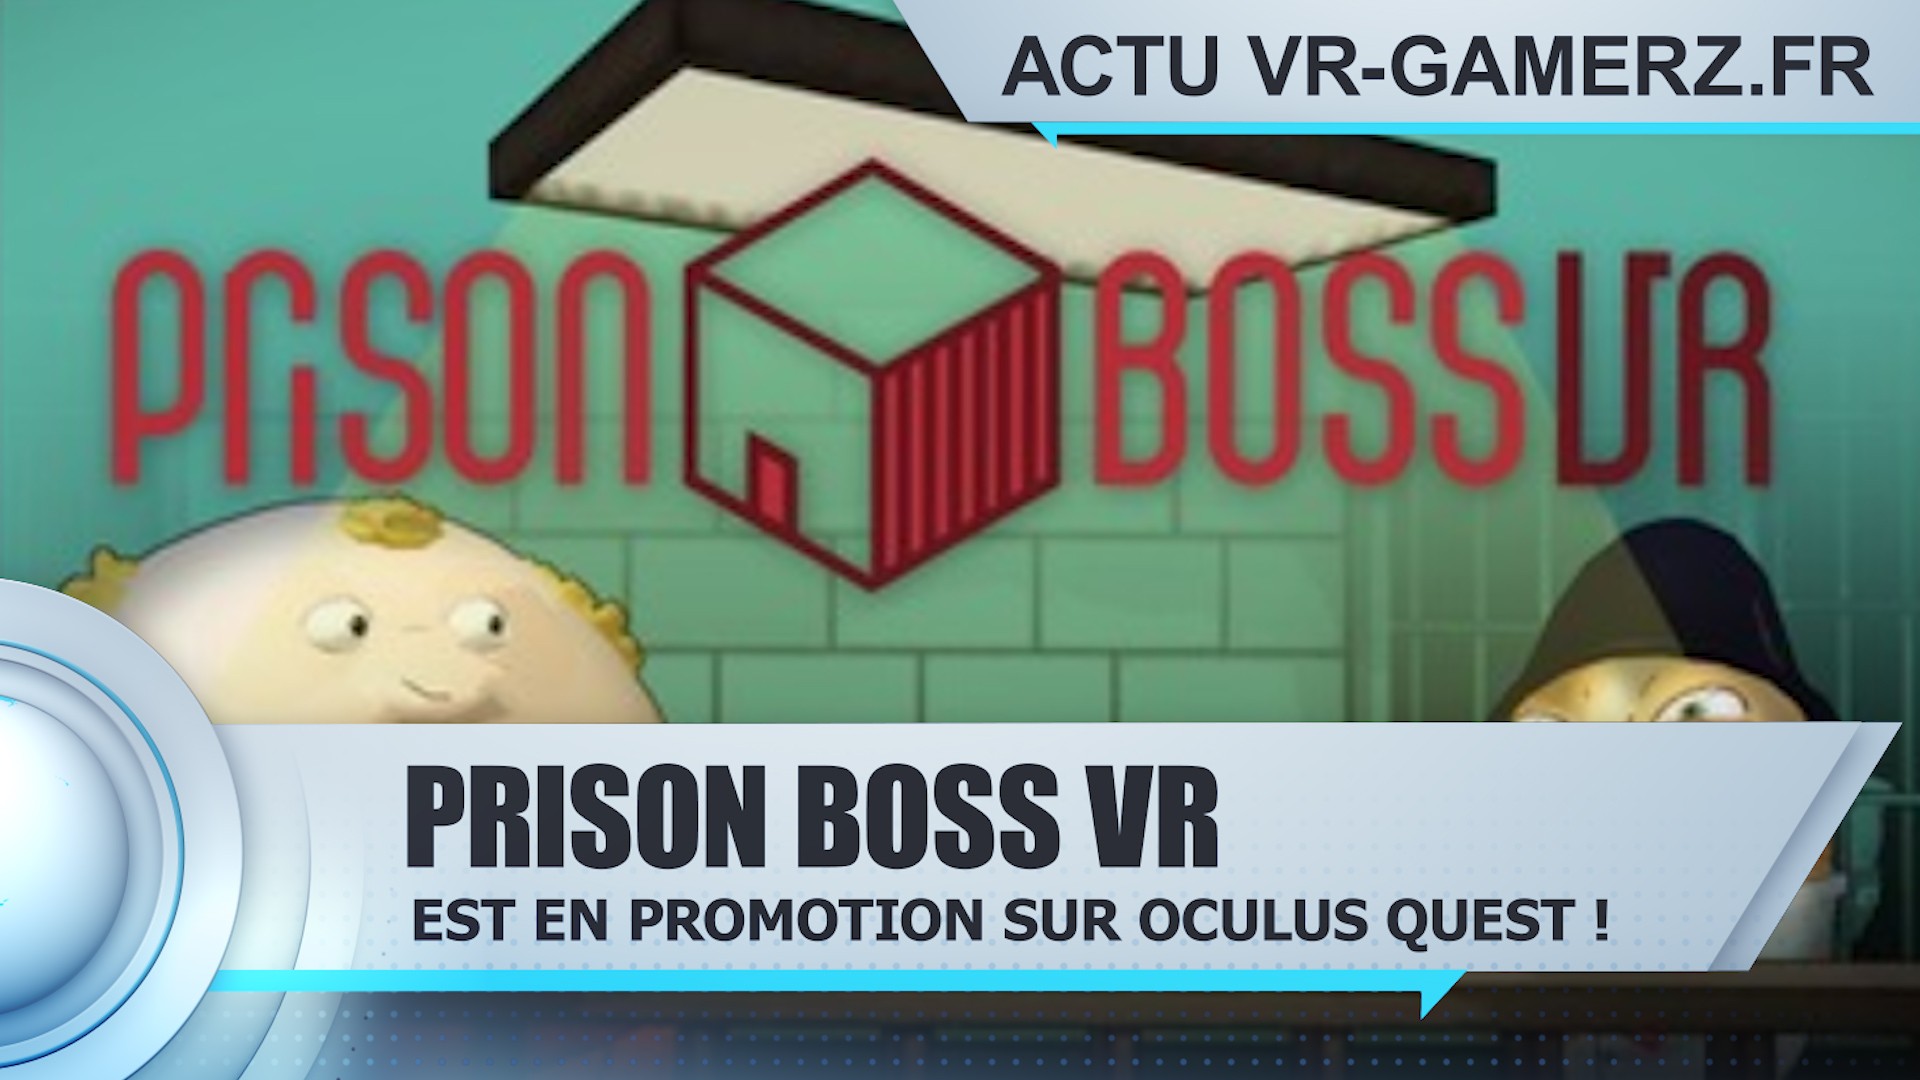 Prison Boss VR est en promotion sur Oculus quest !